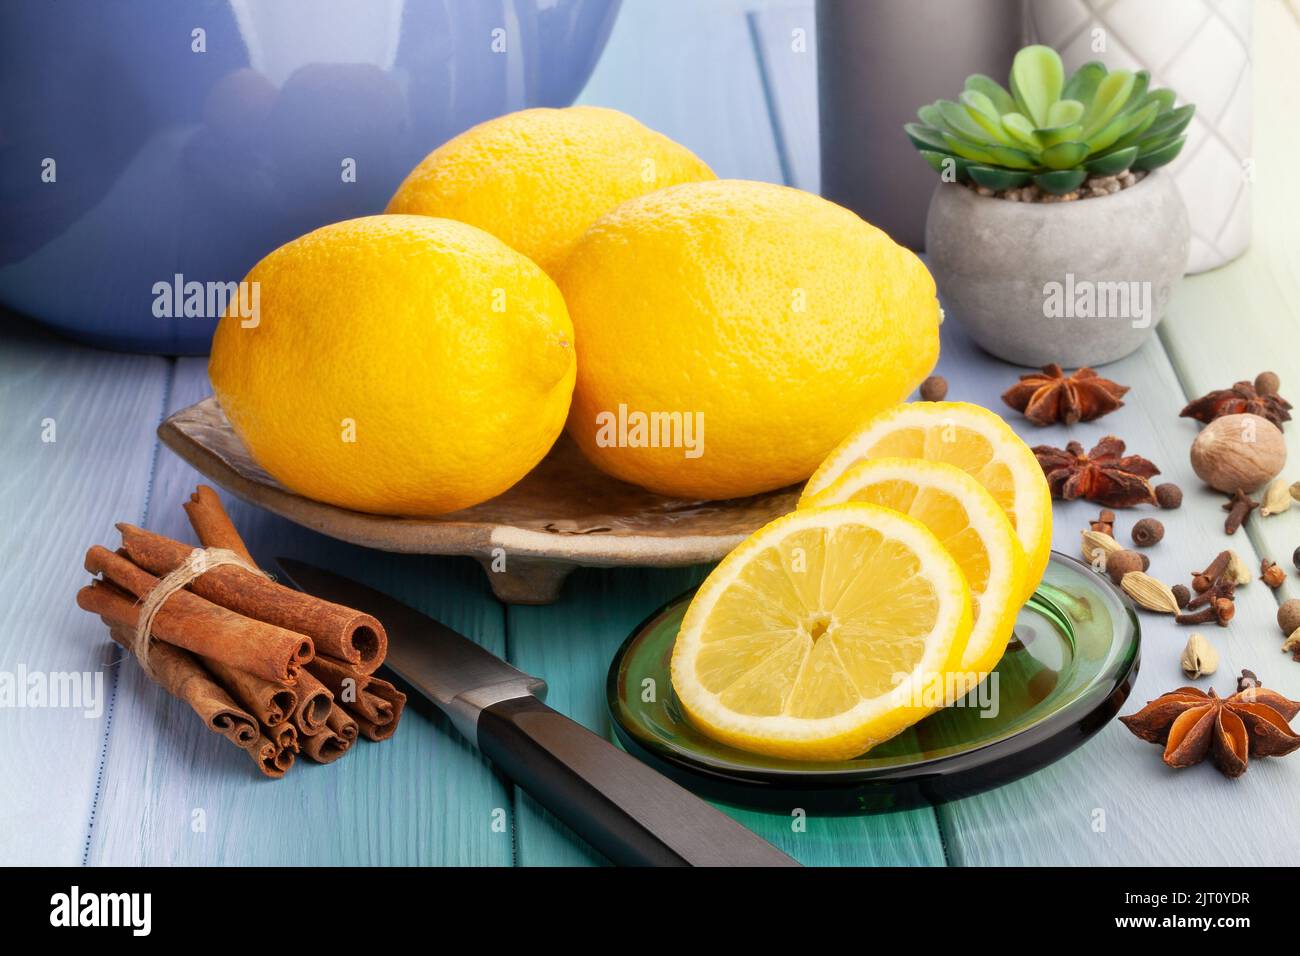 sliced lemon on wood background Stock Photo